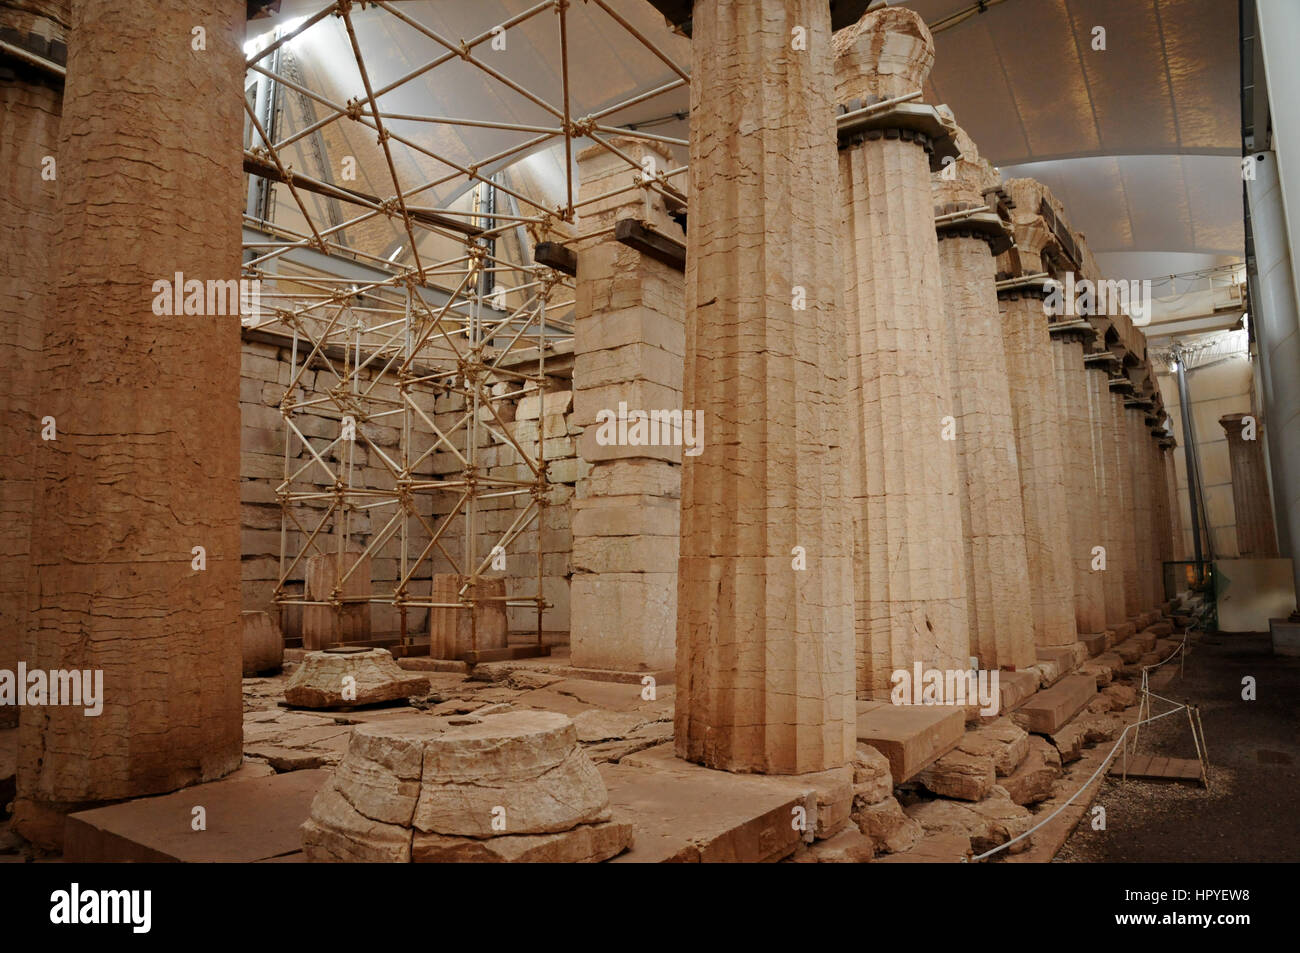 Lavori di restauro in corso presso il Tempio di Apollo vicino Andritsena nella regione montuosa di Arcadia in Grecia.Tempio di Apollo Foto Stock